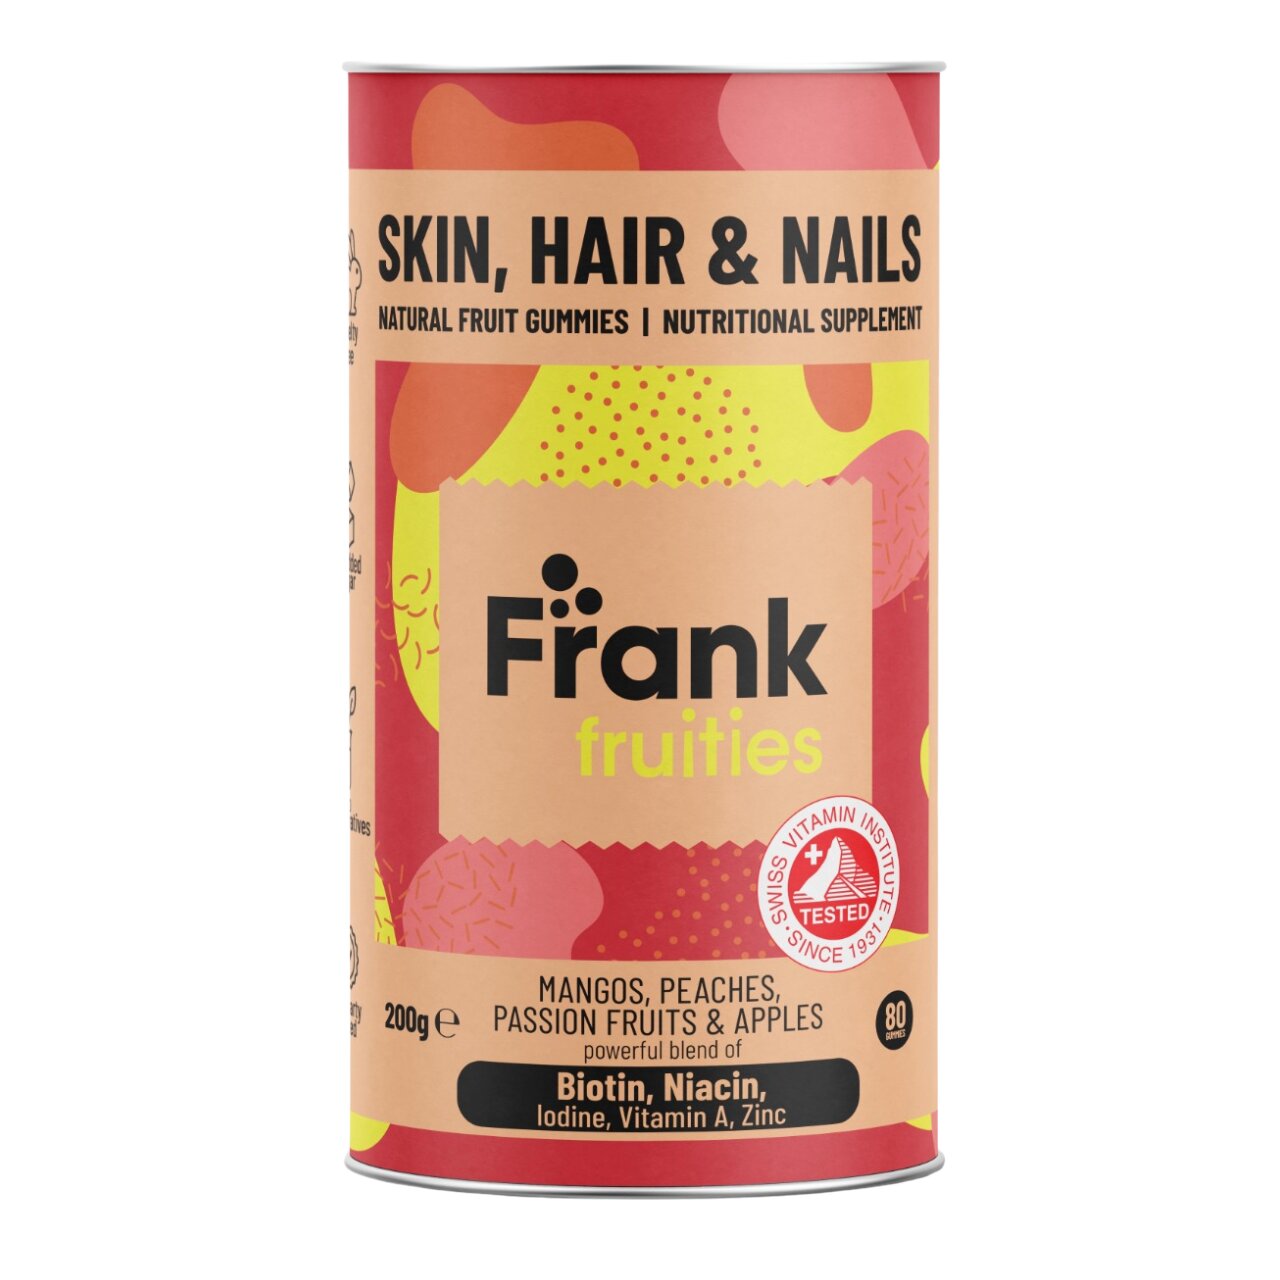 Frank fruities Skin, Hair & Nails, monivitamiini-kivennäisainevalmiste